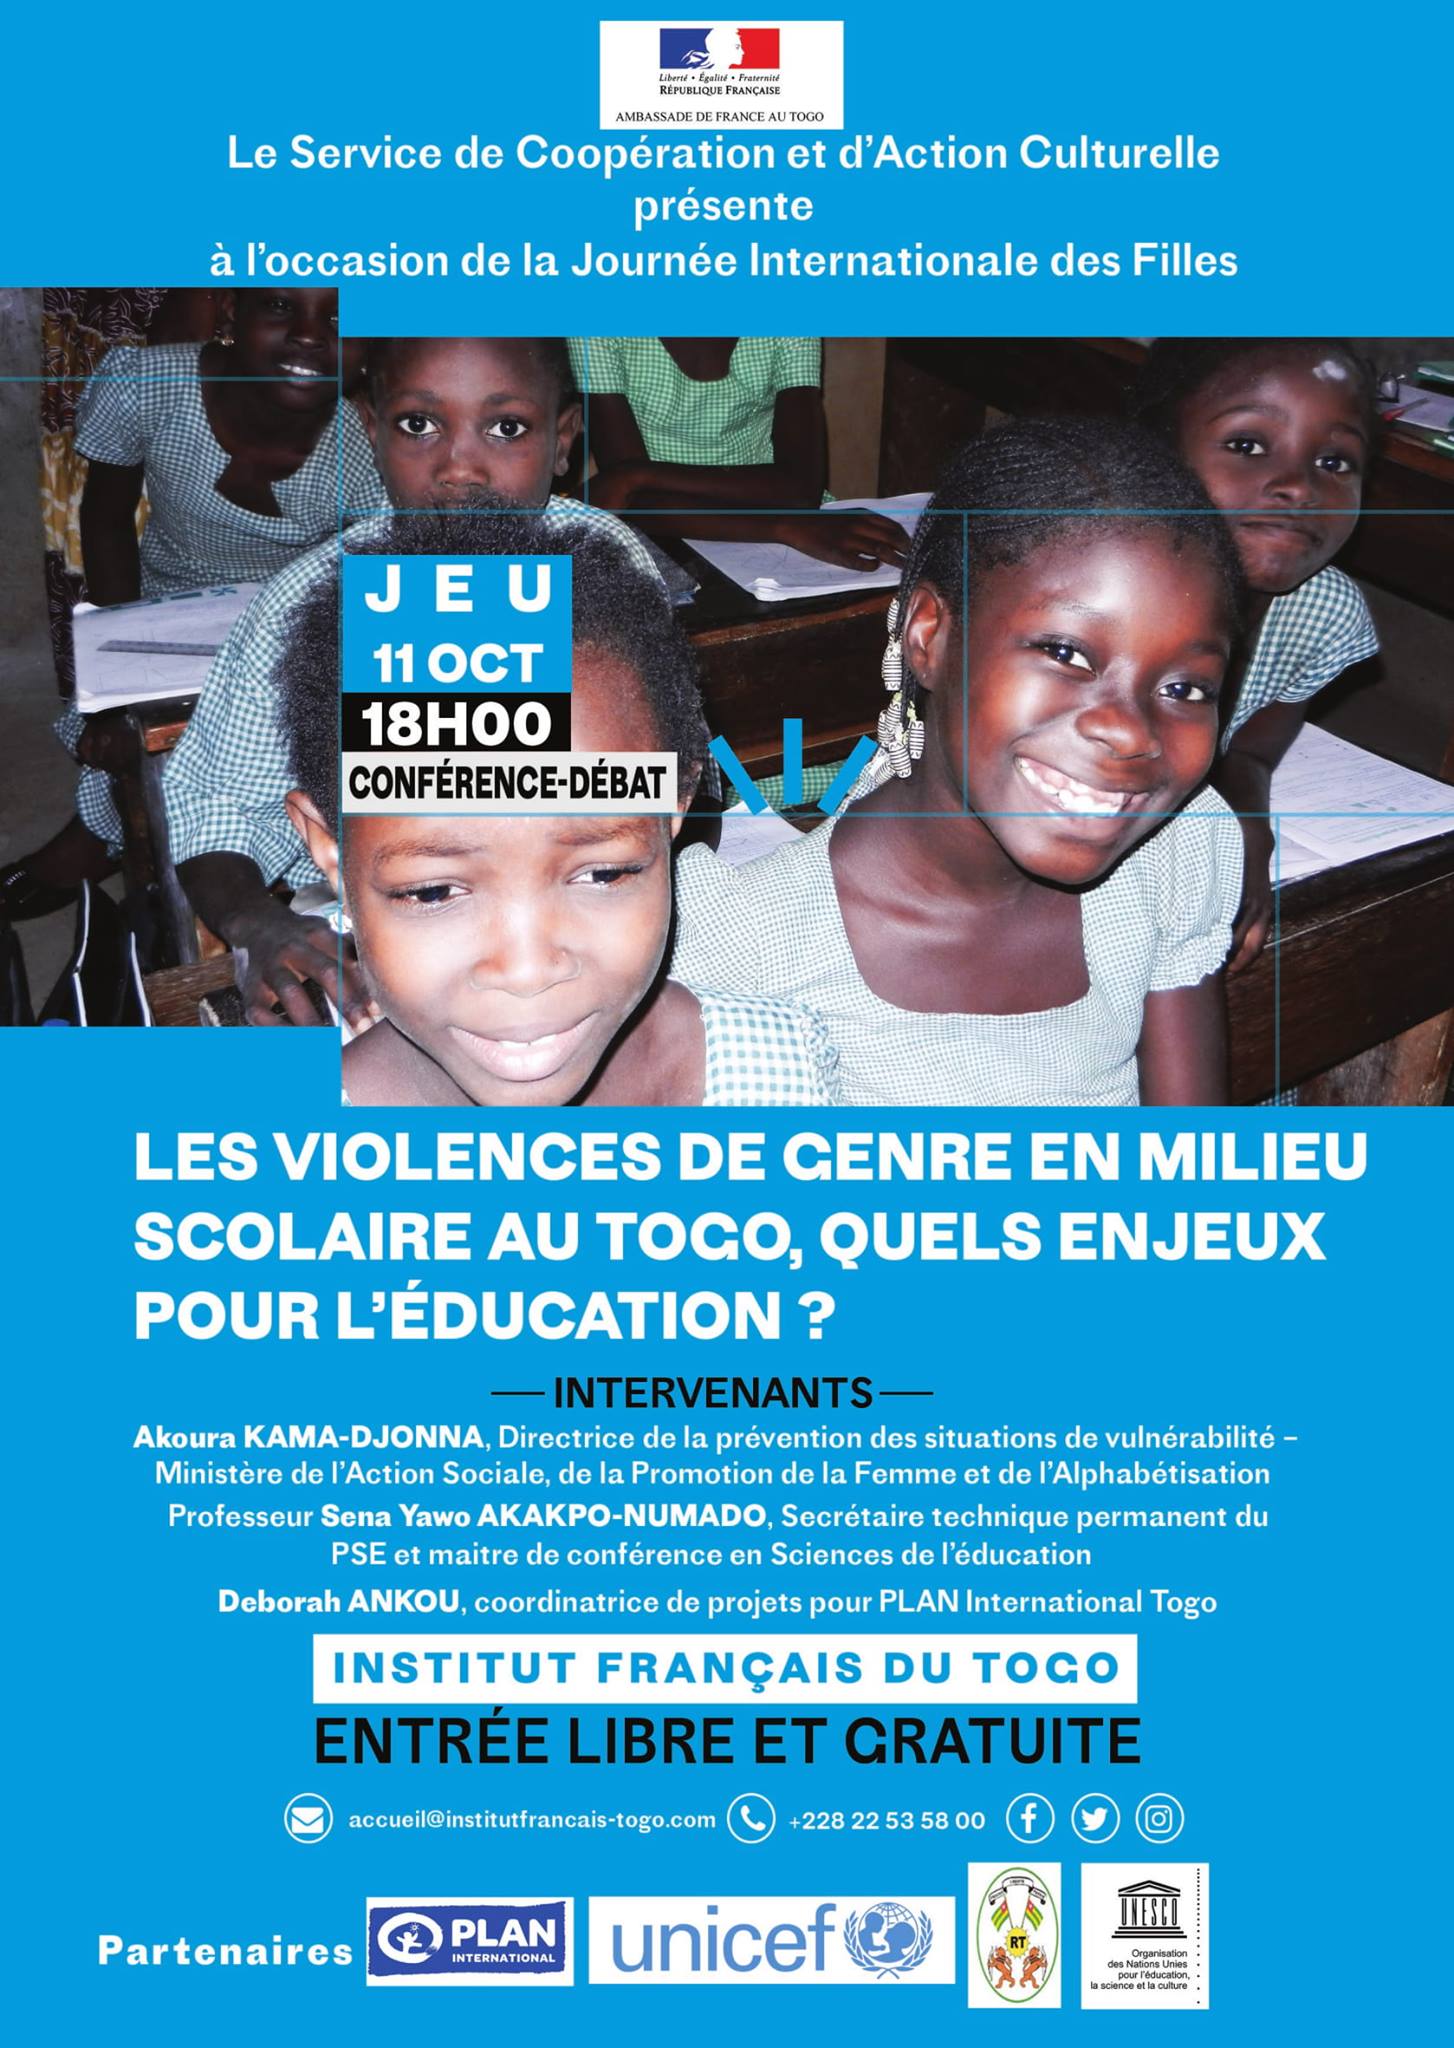 Conférence-Débat : « Les violences de genre en milieu scolaire au Togo, quels enjeux pour l’éducation? »